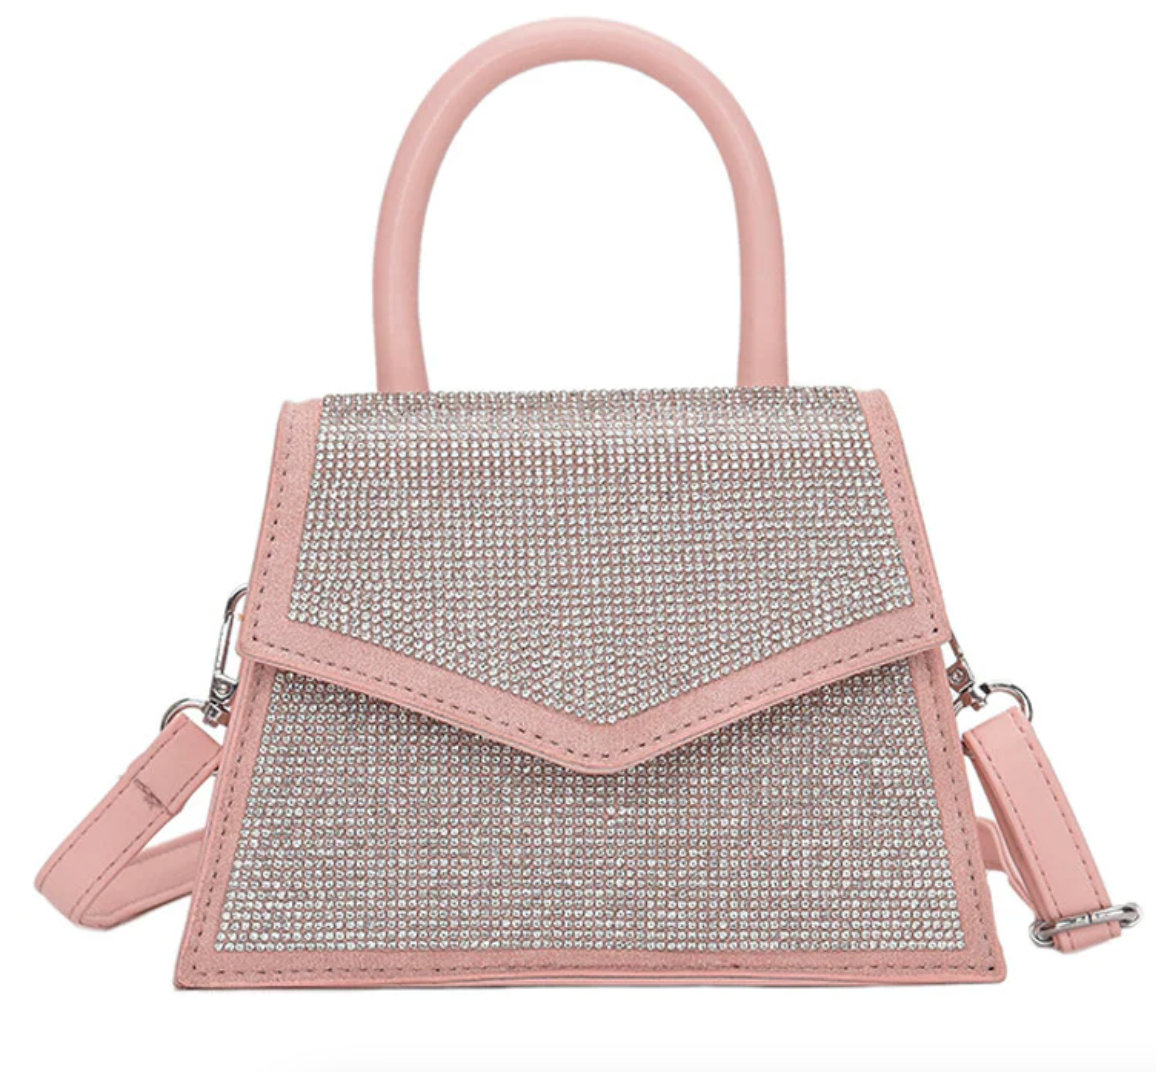 Buy Kathy Van Zeeland Women Pink Handbag Multicolor Online @ Best Price in  India | Flipkart.com